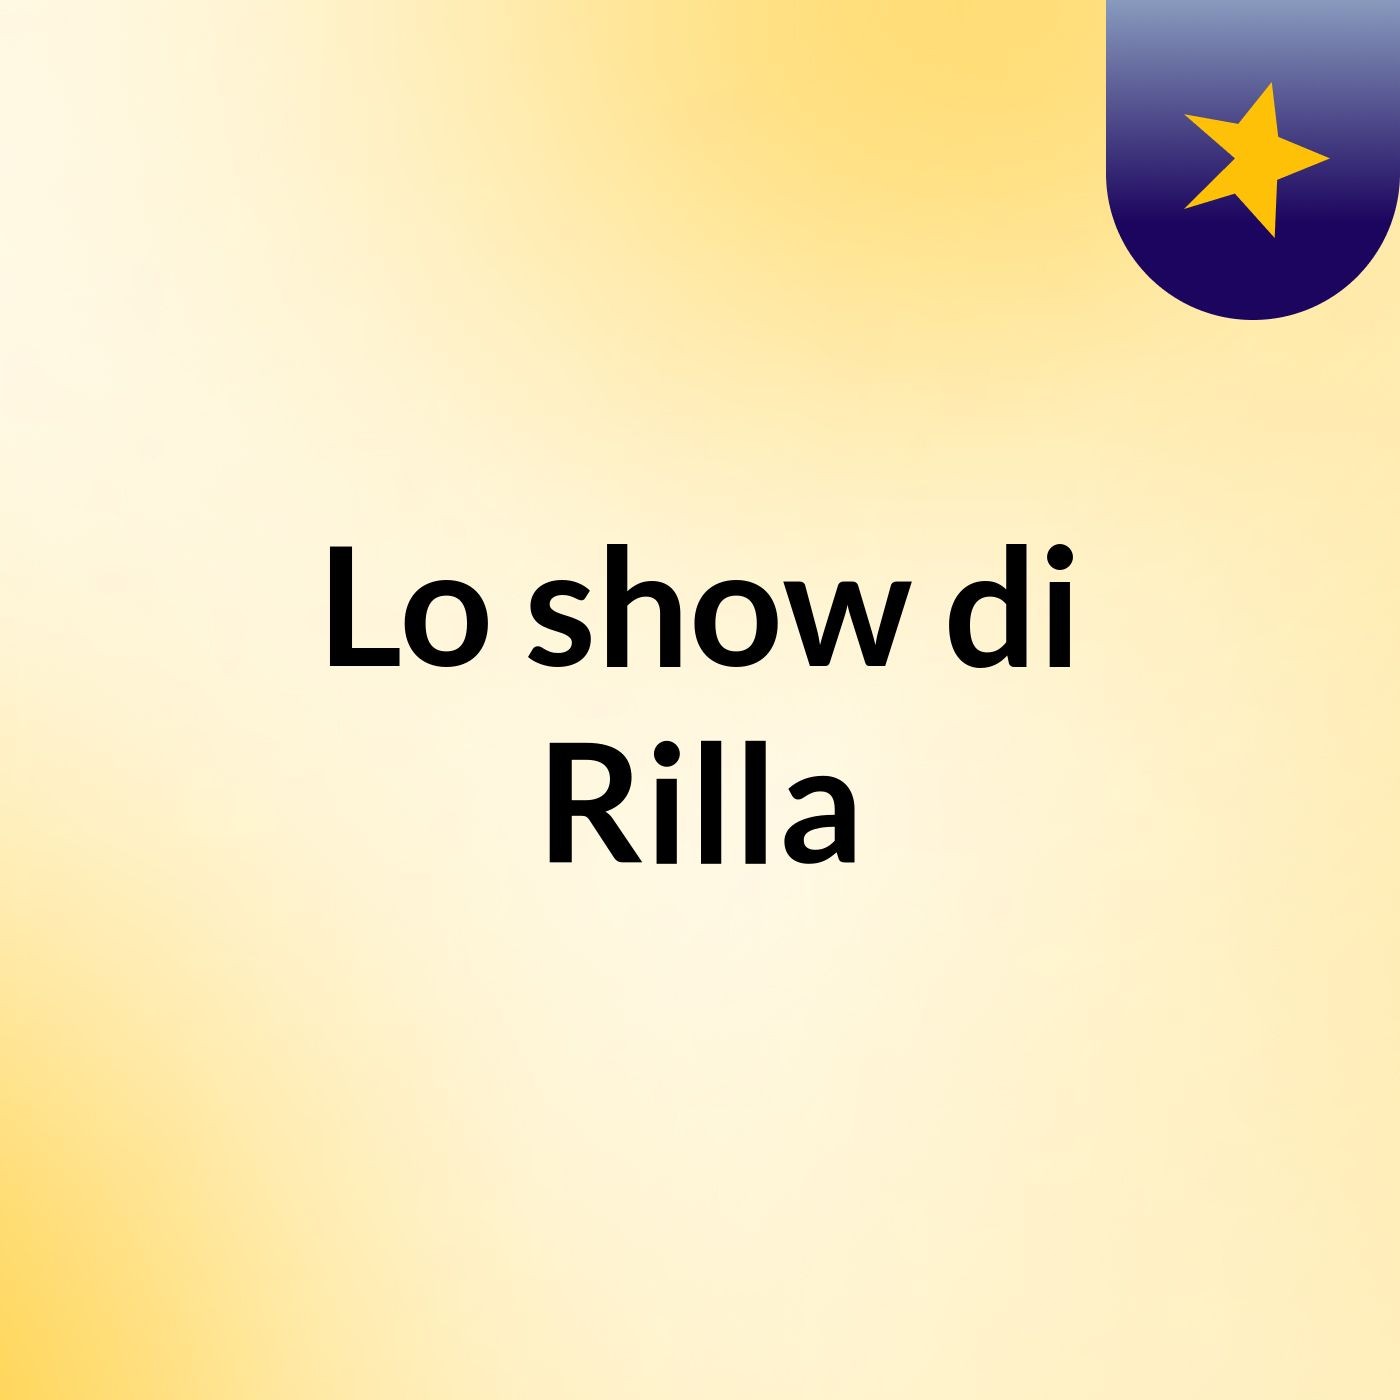 Lo show di Rilla